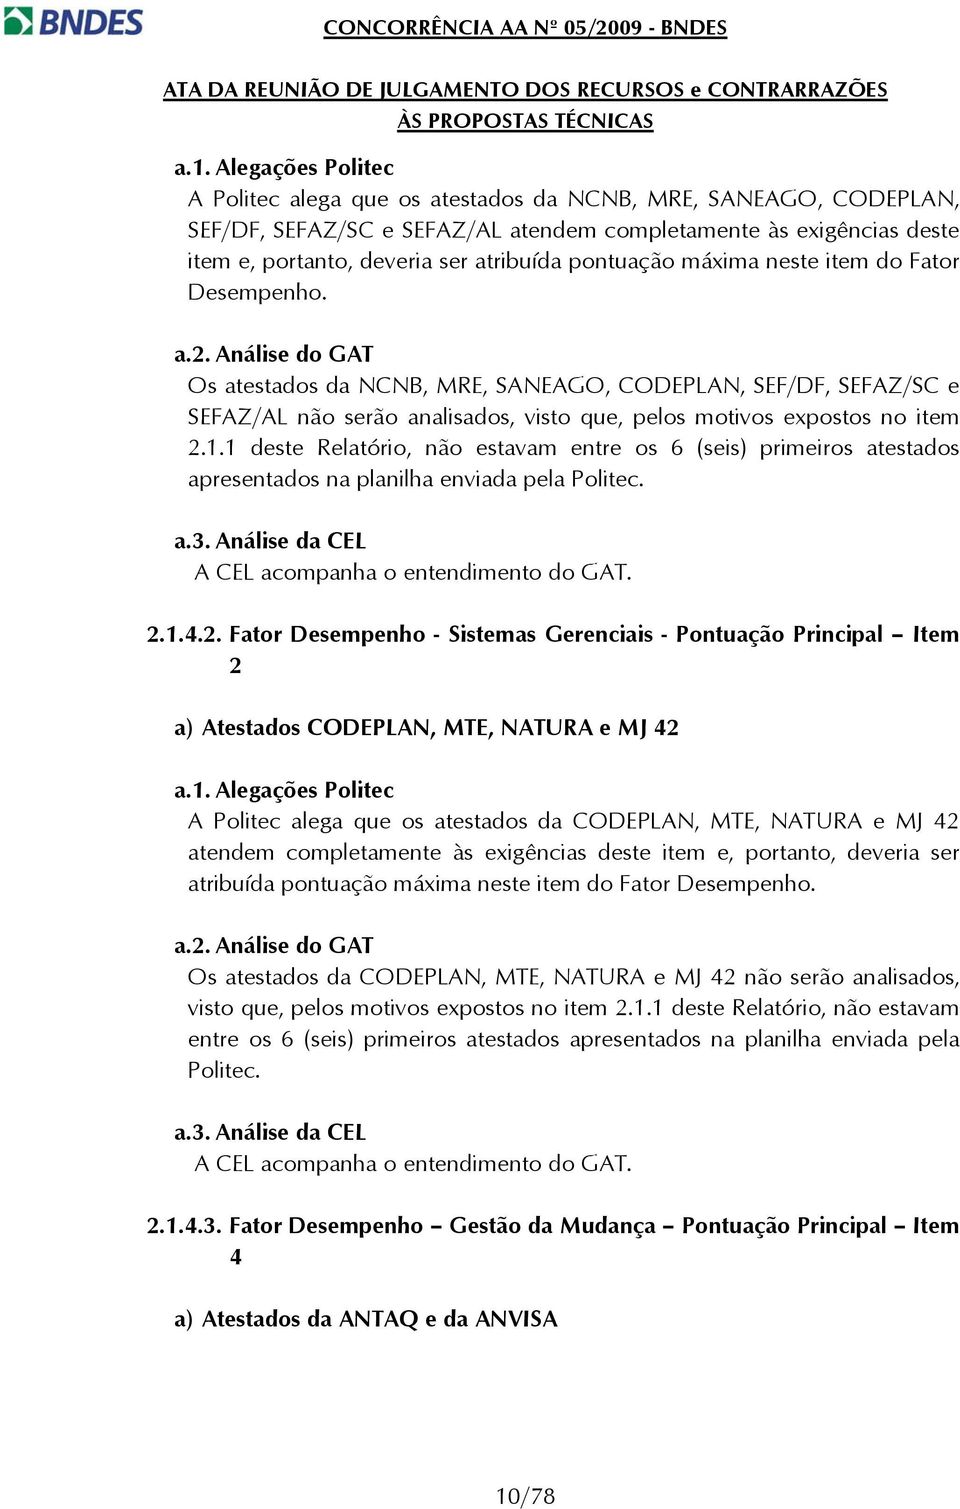 Análise do GAT Os atestados da NCNB, MRE, SANEAGO, CODEPLAN, SEF/DF, SEFAZ/SC e SEFAZ/AL não serão analisados, visto que, pelos motivos expostos no item 2.1.